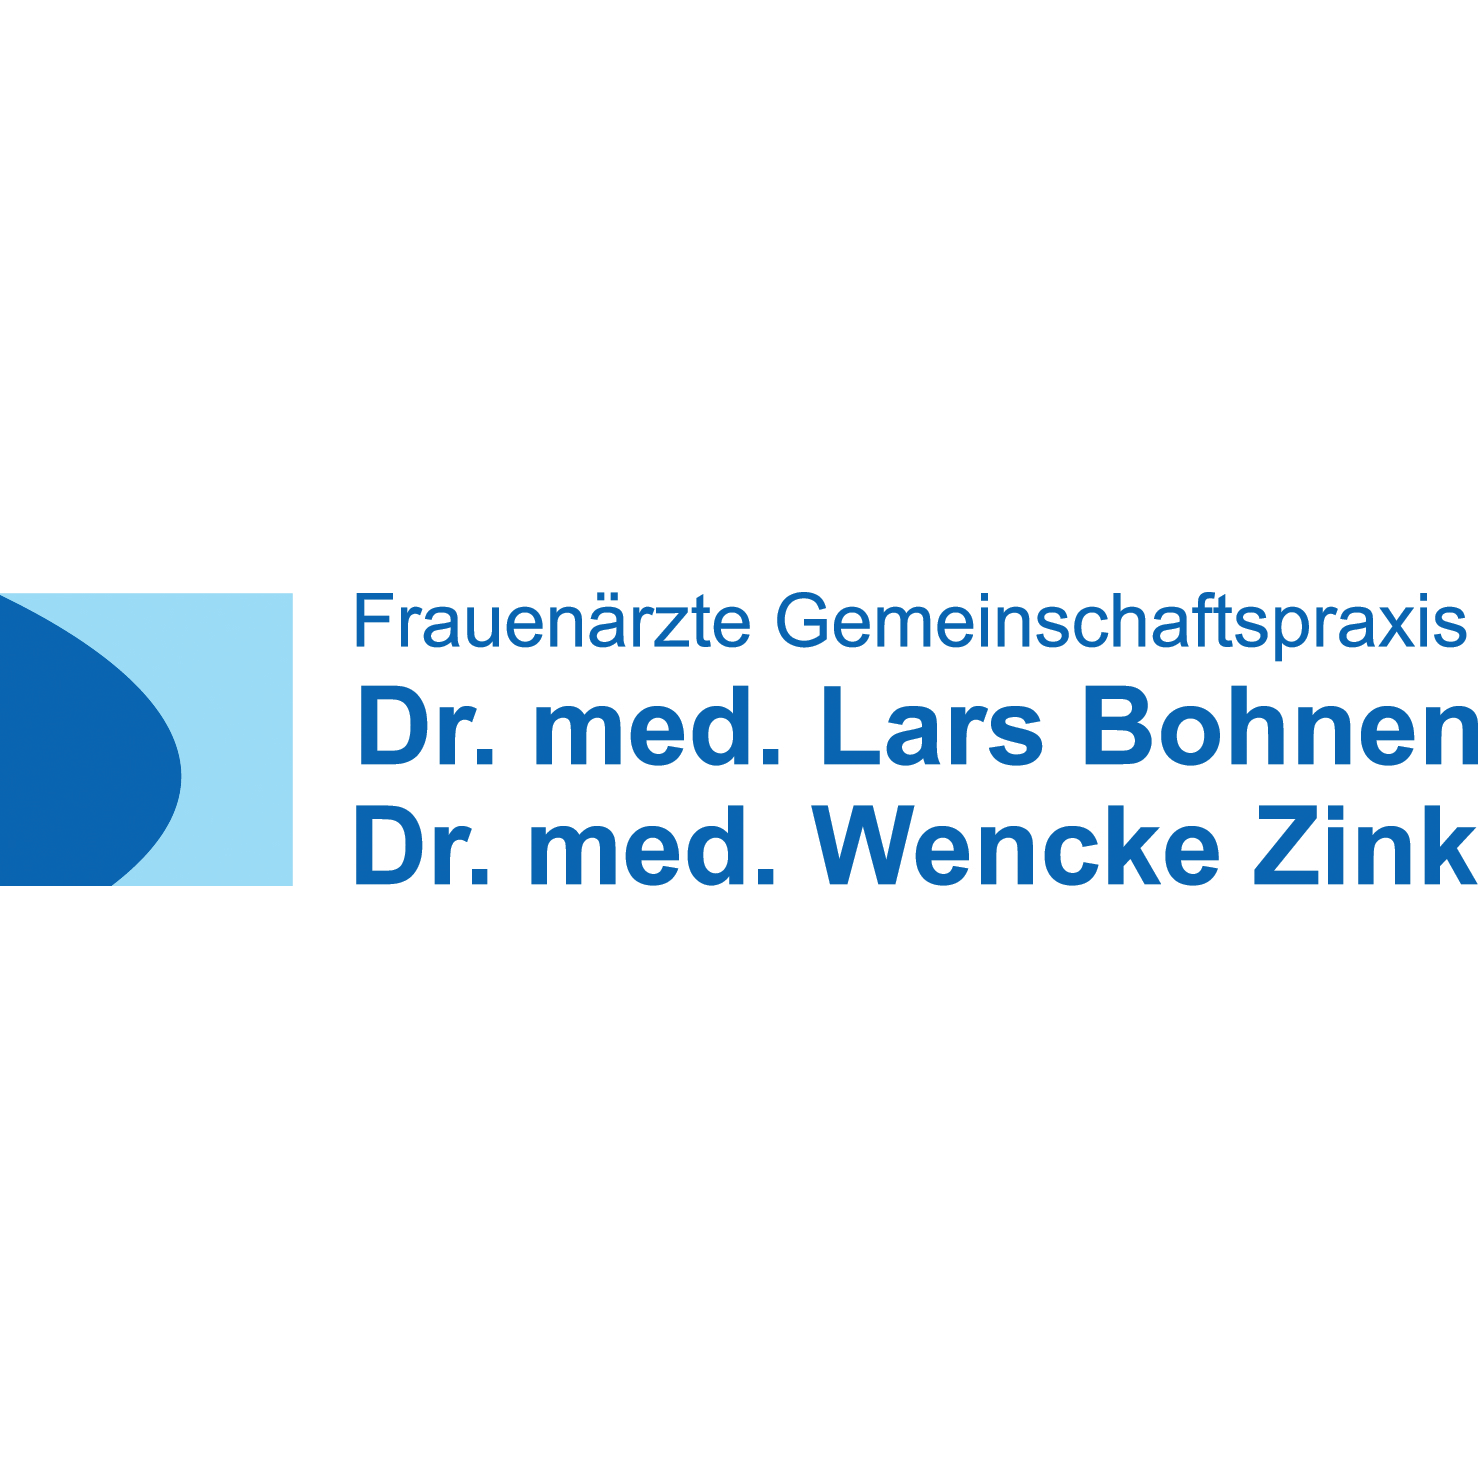 Frauenärzte Gemeinschaftspraxis Dr. med. Lars Bohnen Dr. med. Wencke Zink in Aschaffenburg - Logo